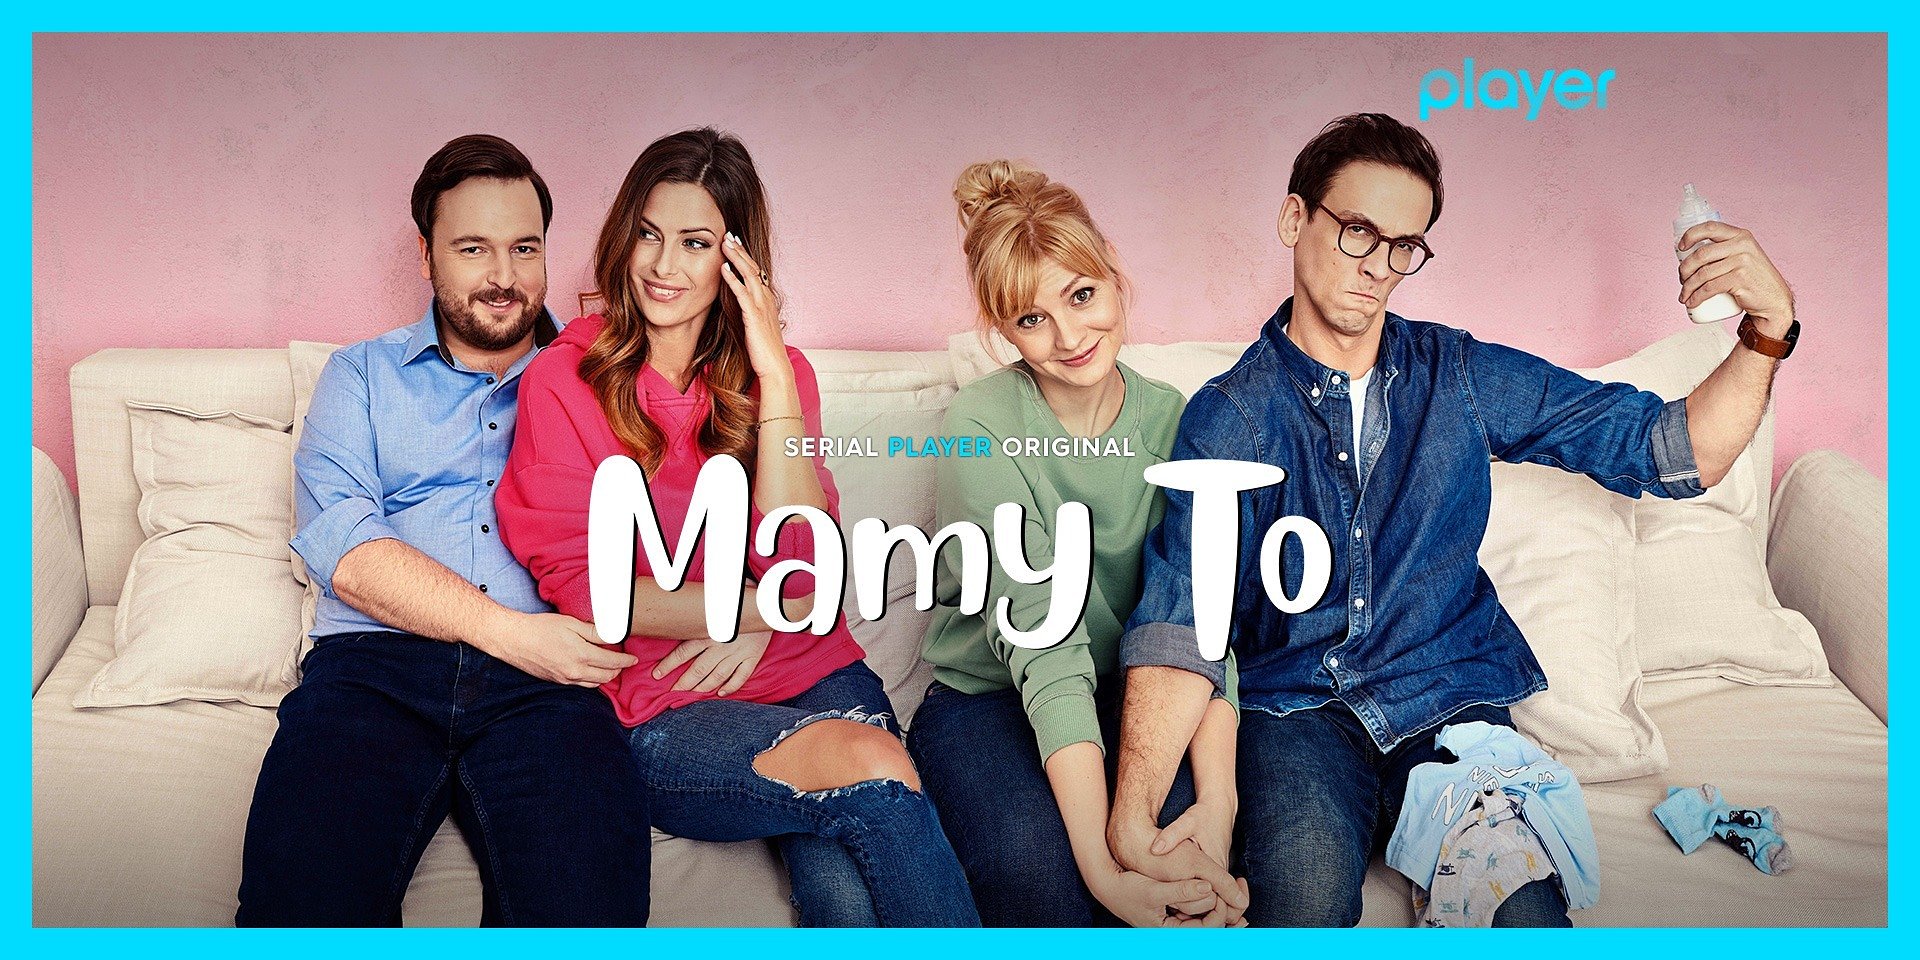 Nowy serial komediowy „Mamy to” dostępny już w marcu na platformie Player! O czym opowie?